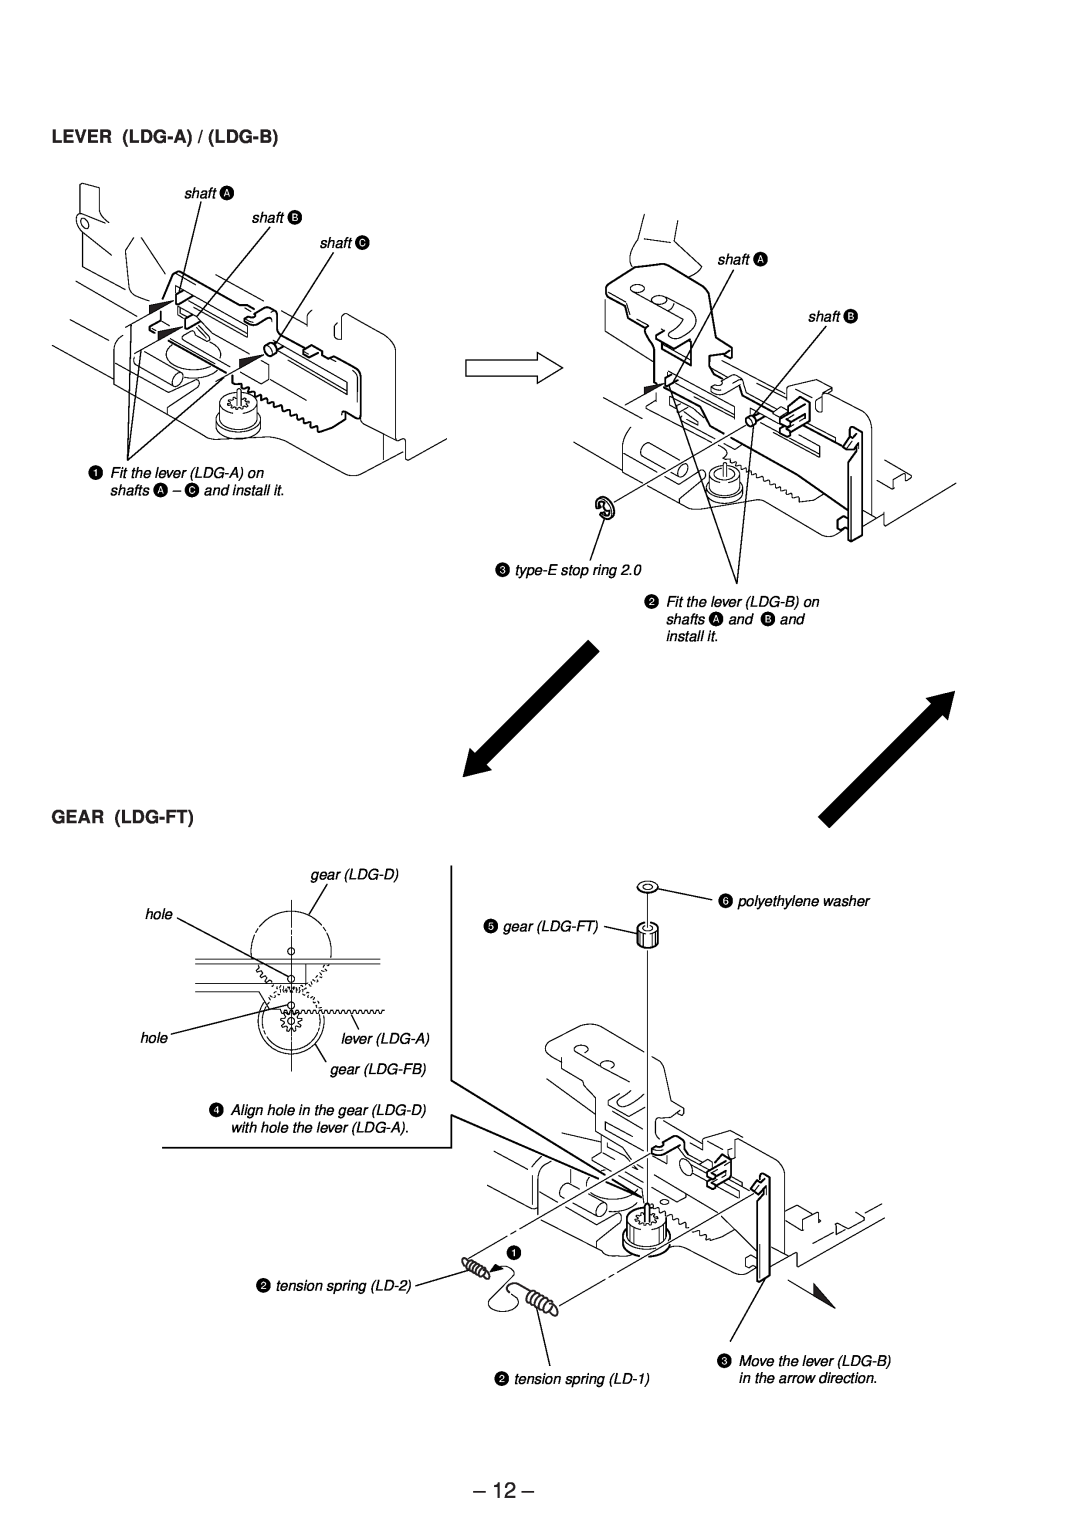 Sony XR-4803 service manual Lever Ldg-A / Ldg-B, Gear Ldg-Ft 